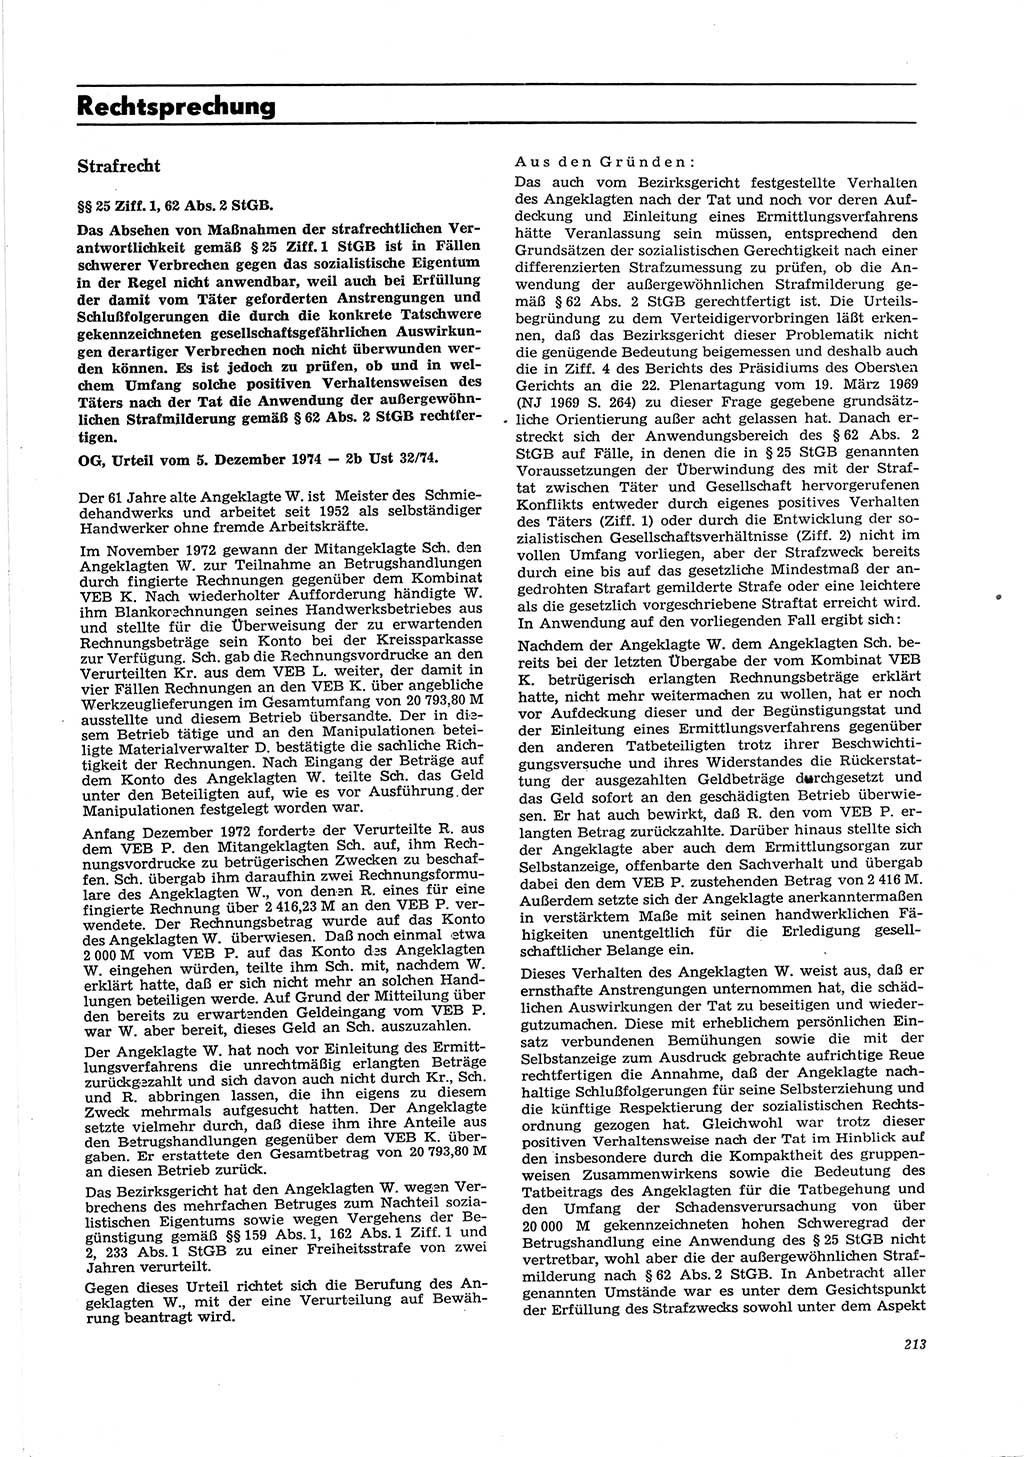 Neue Justiz (NJ), Zeitschrift für Recht und Rechtswissenschaft [Deutsche Demokratische Republik (DDR)], 29. Jahrgang 1975, Seite 213 (NJ DDR 1975, S. 213)